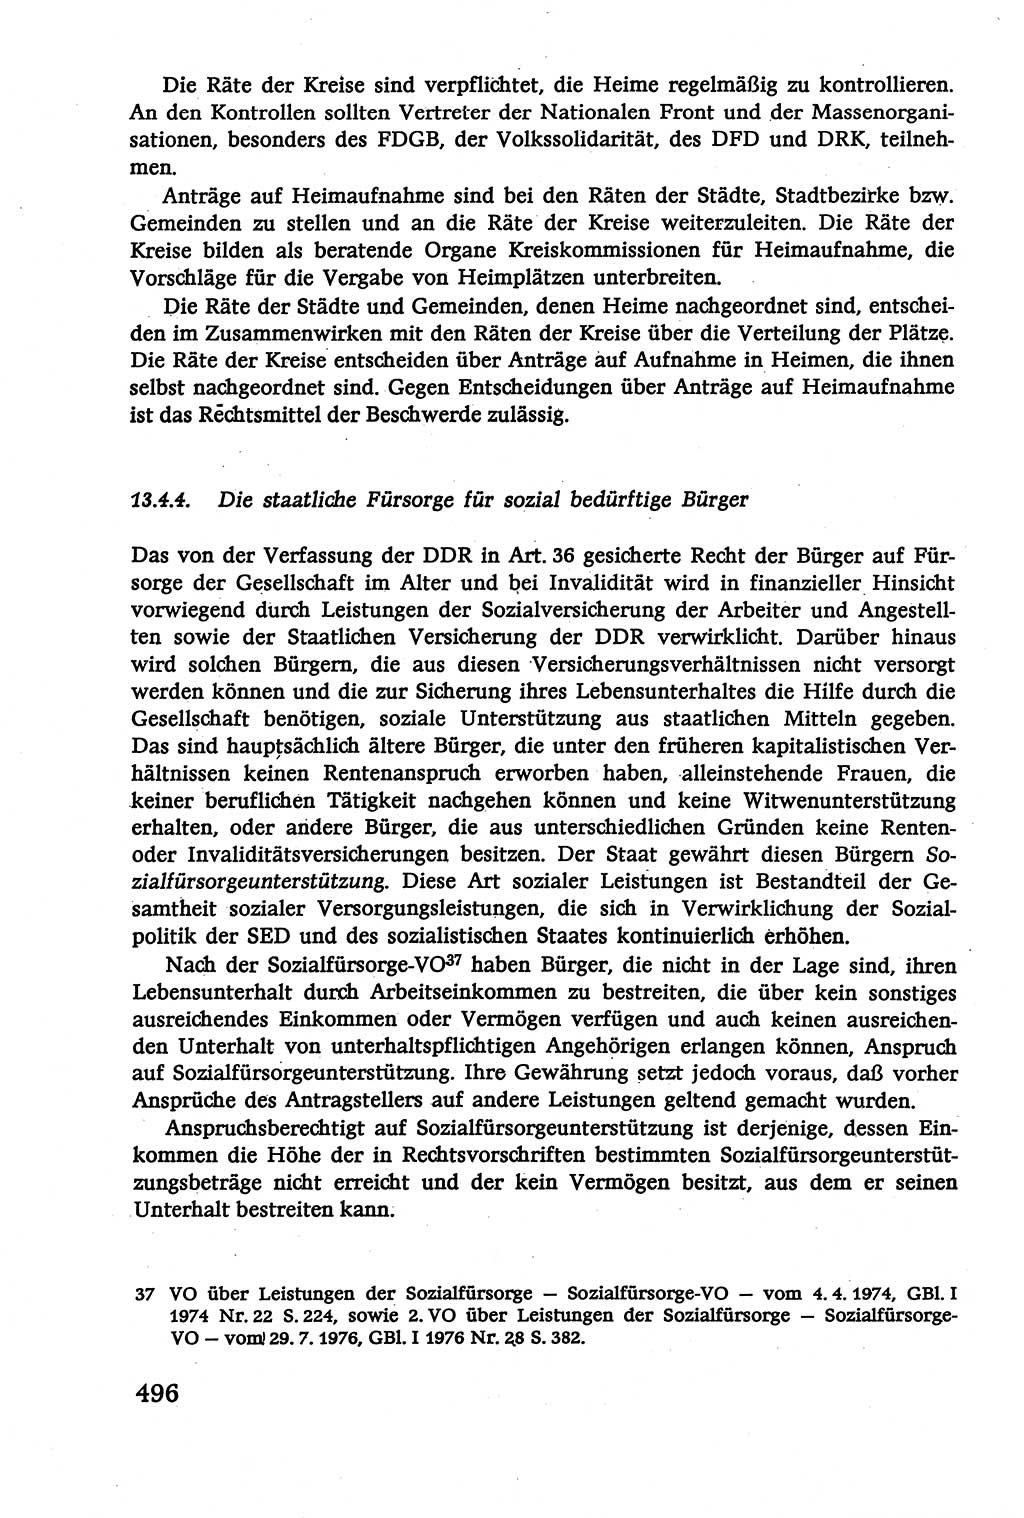 Verwaltungsrecht [Deutsche Demokratische Republik (DDR)], Lehrbuch 1979, Seite 496 (Verw.-R. DDR Lb. 1979, S. 496)